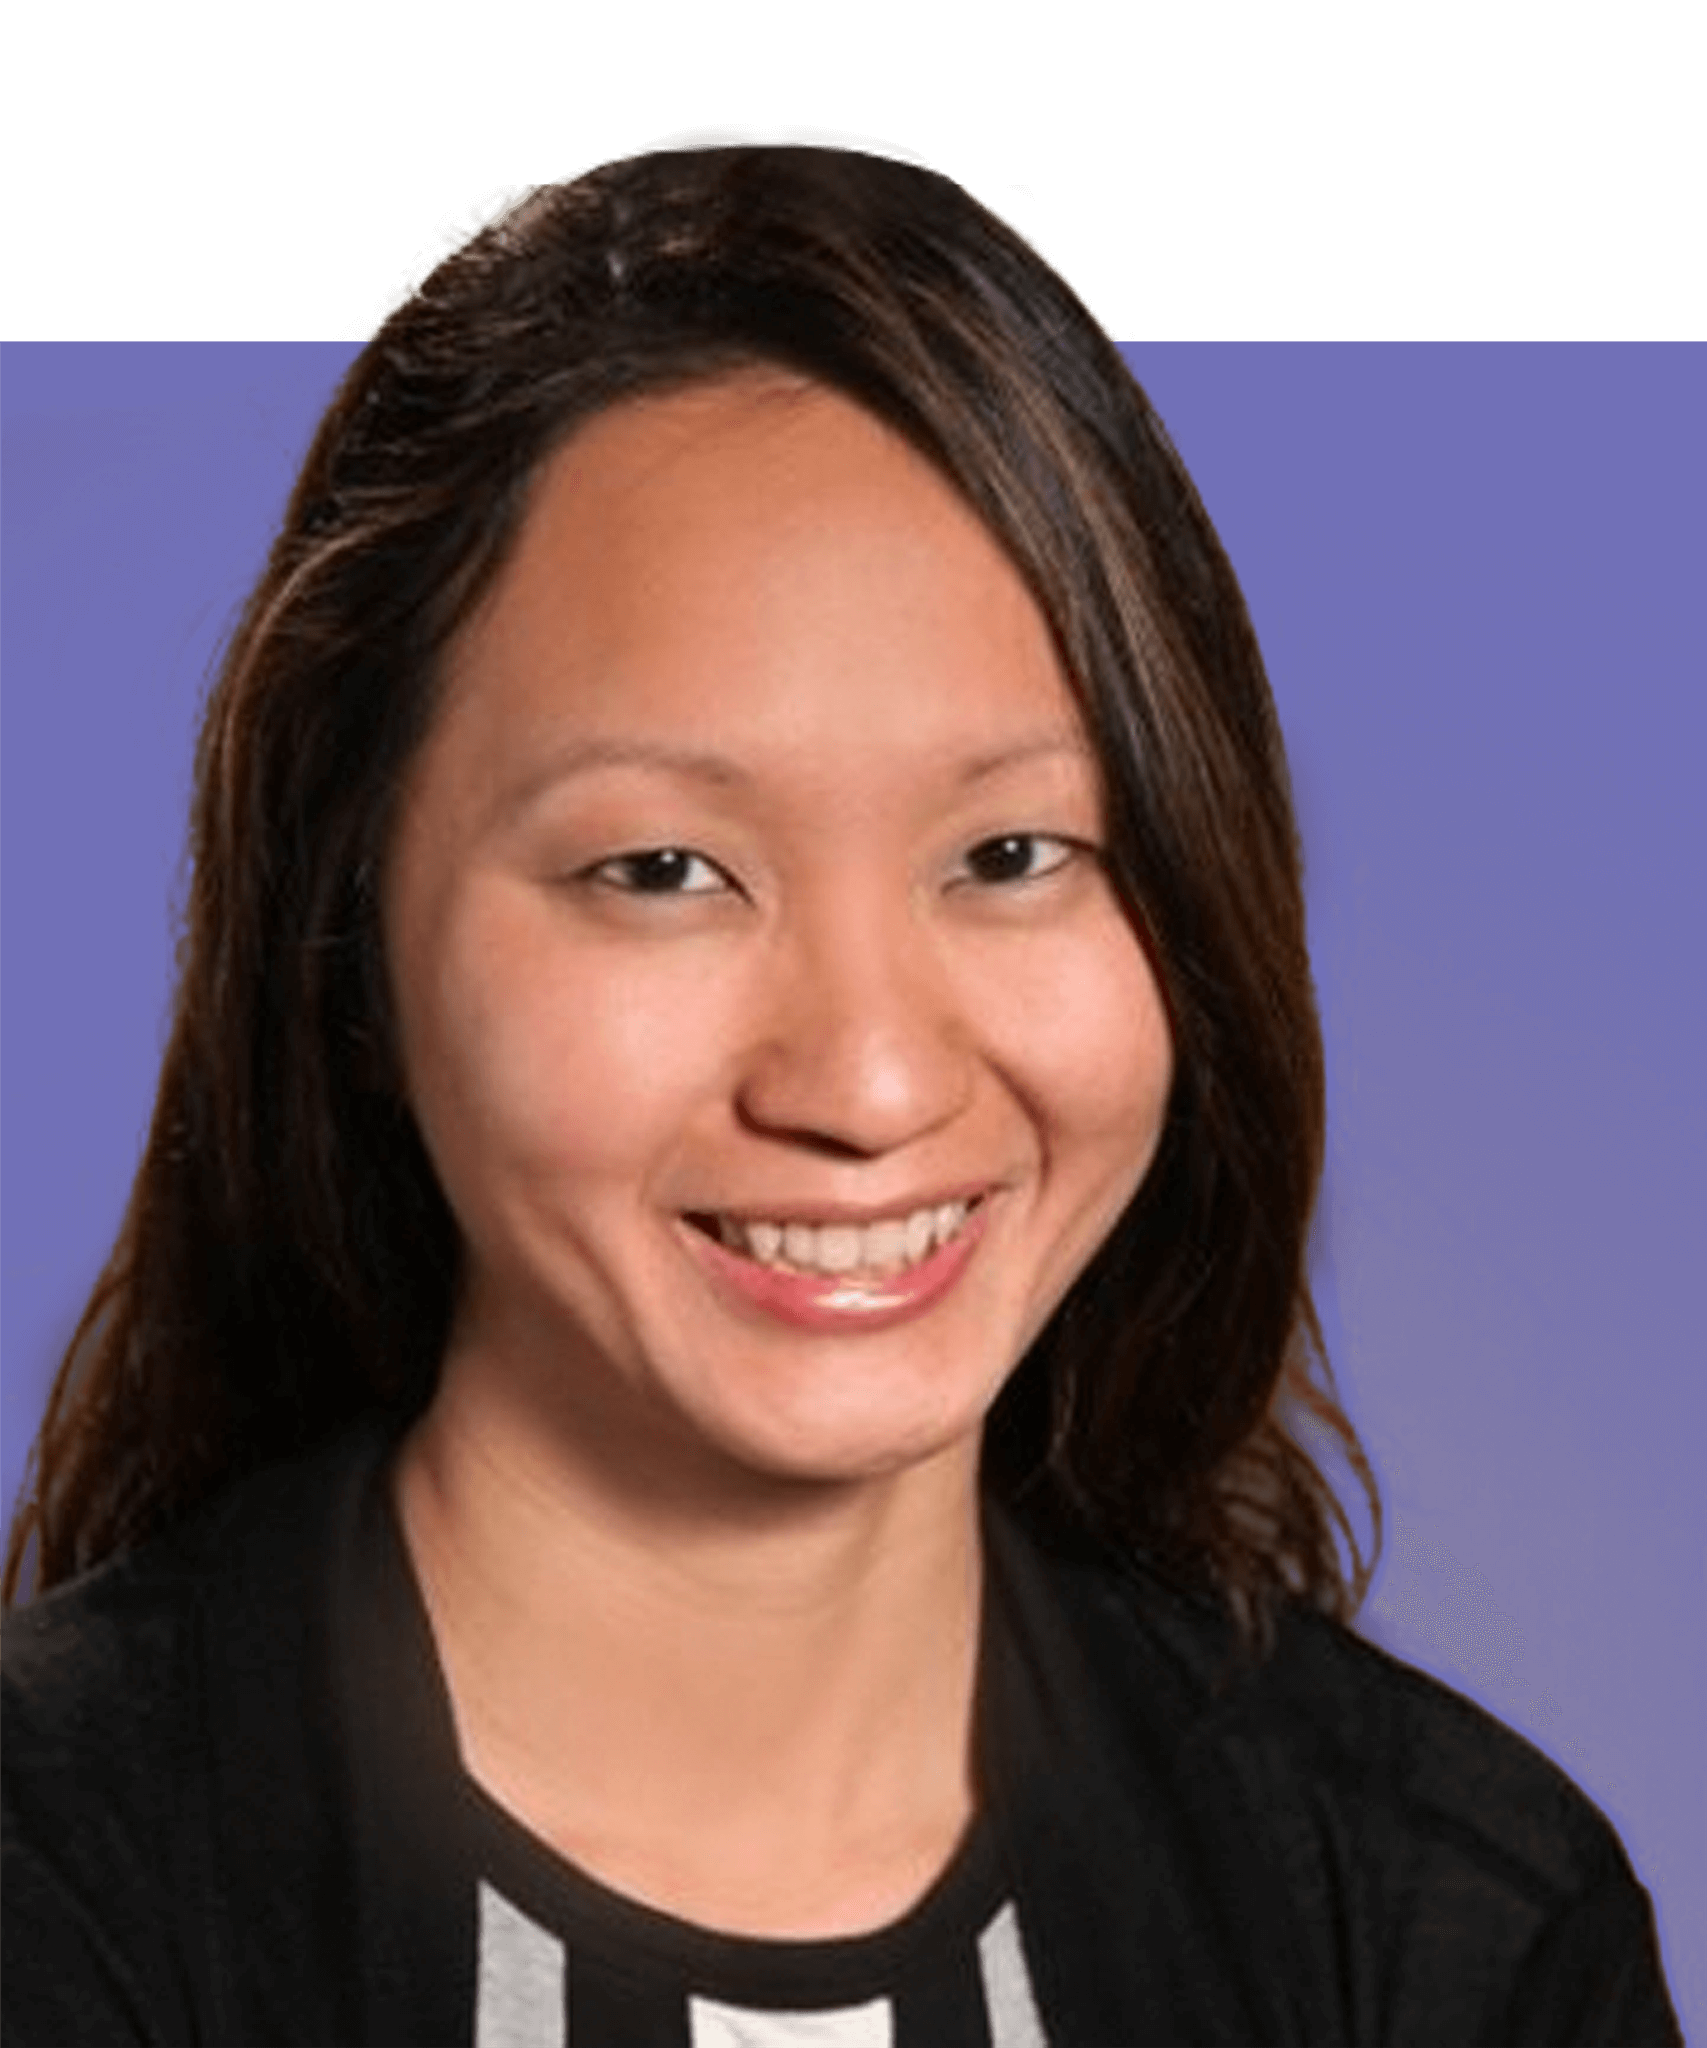 Plan de tête de Jacelyn Seng, responsable de la santé en Amérique du Nord. C'est une femme asiatique aux longs cheveux noirs et aux yeux bruns. Elle porte un haut noir rayé et sourit à la caméra.